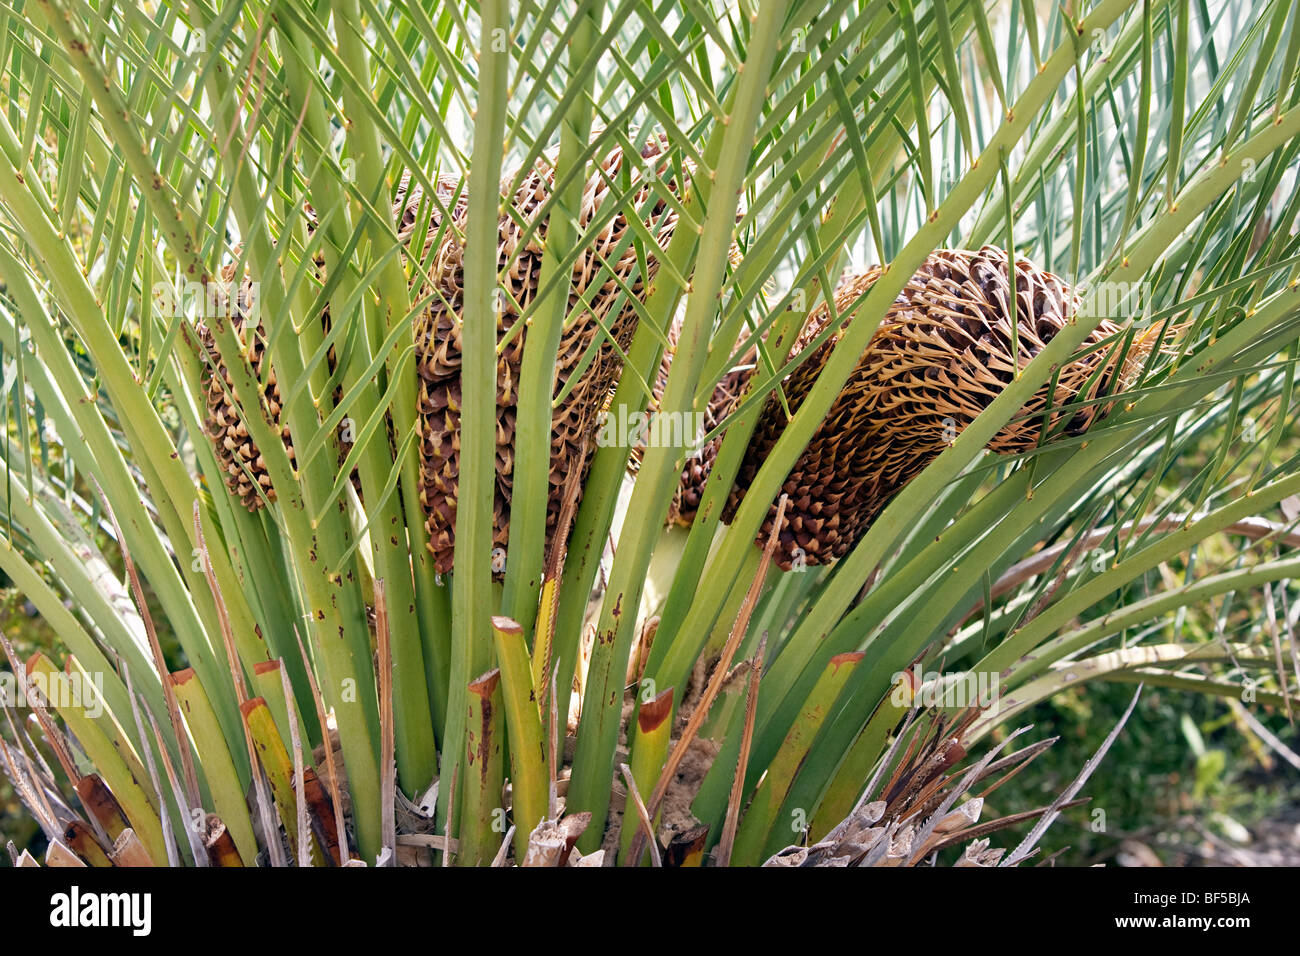 Macrozamia riedlei plant. Perth, Western Australia Stock Photo